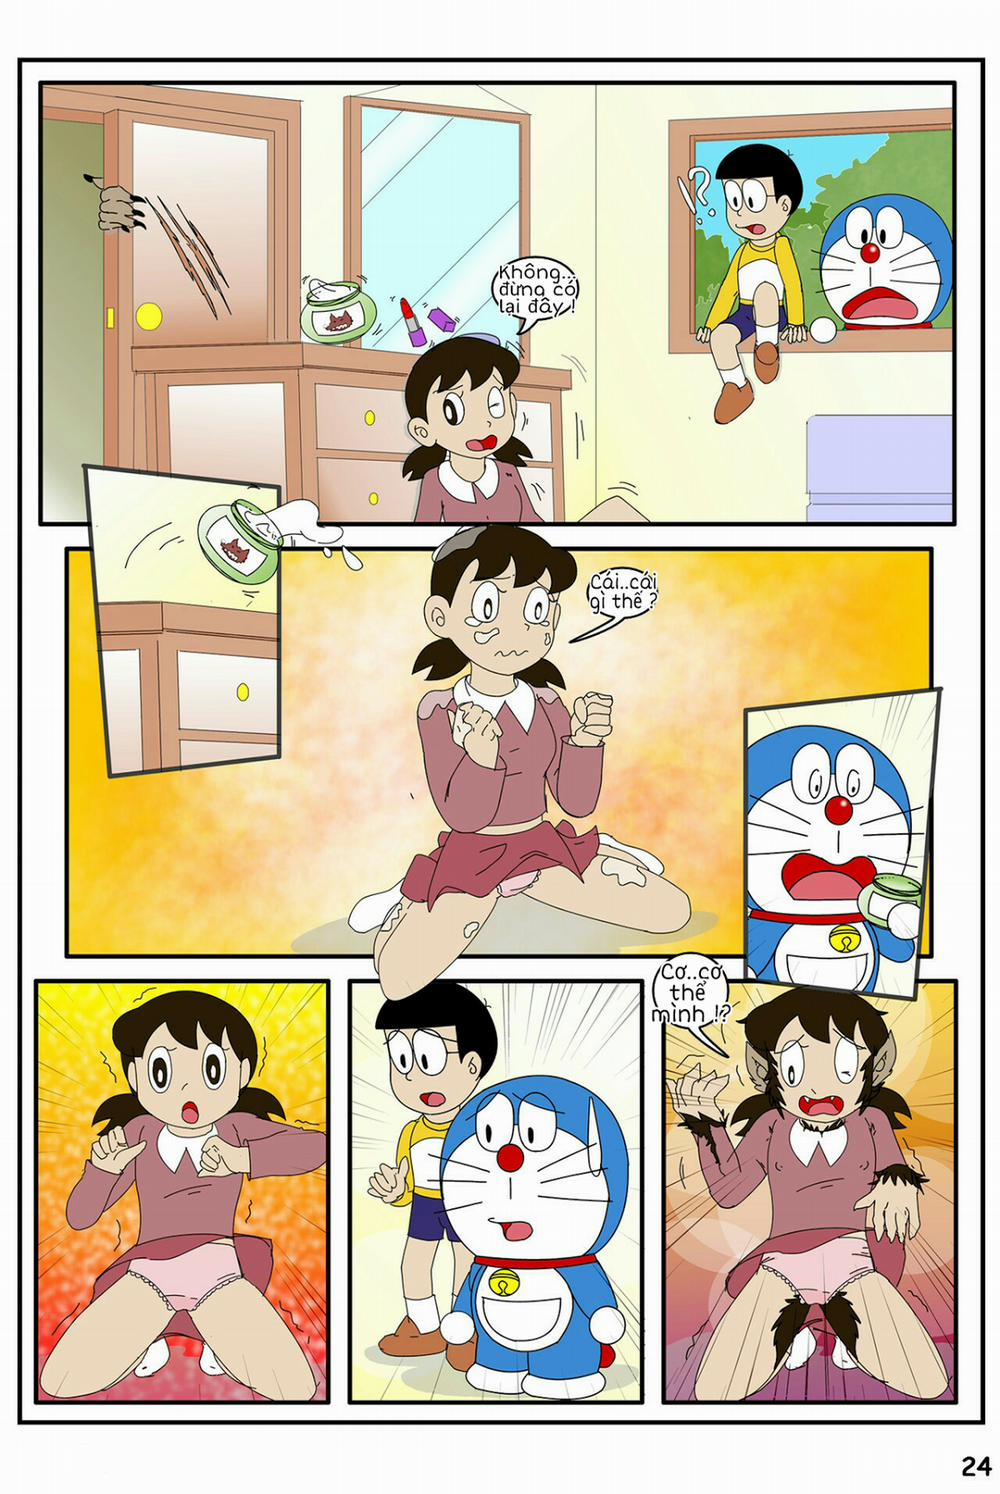 Tuyển Tập Doraemon Doujinshi 18+ Chương 20 Kem ch s i 2 Trang 8